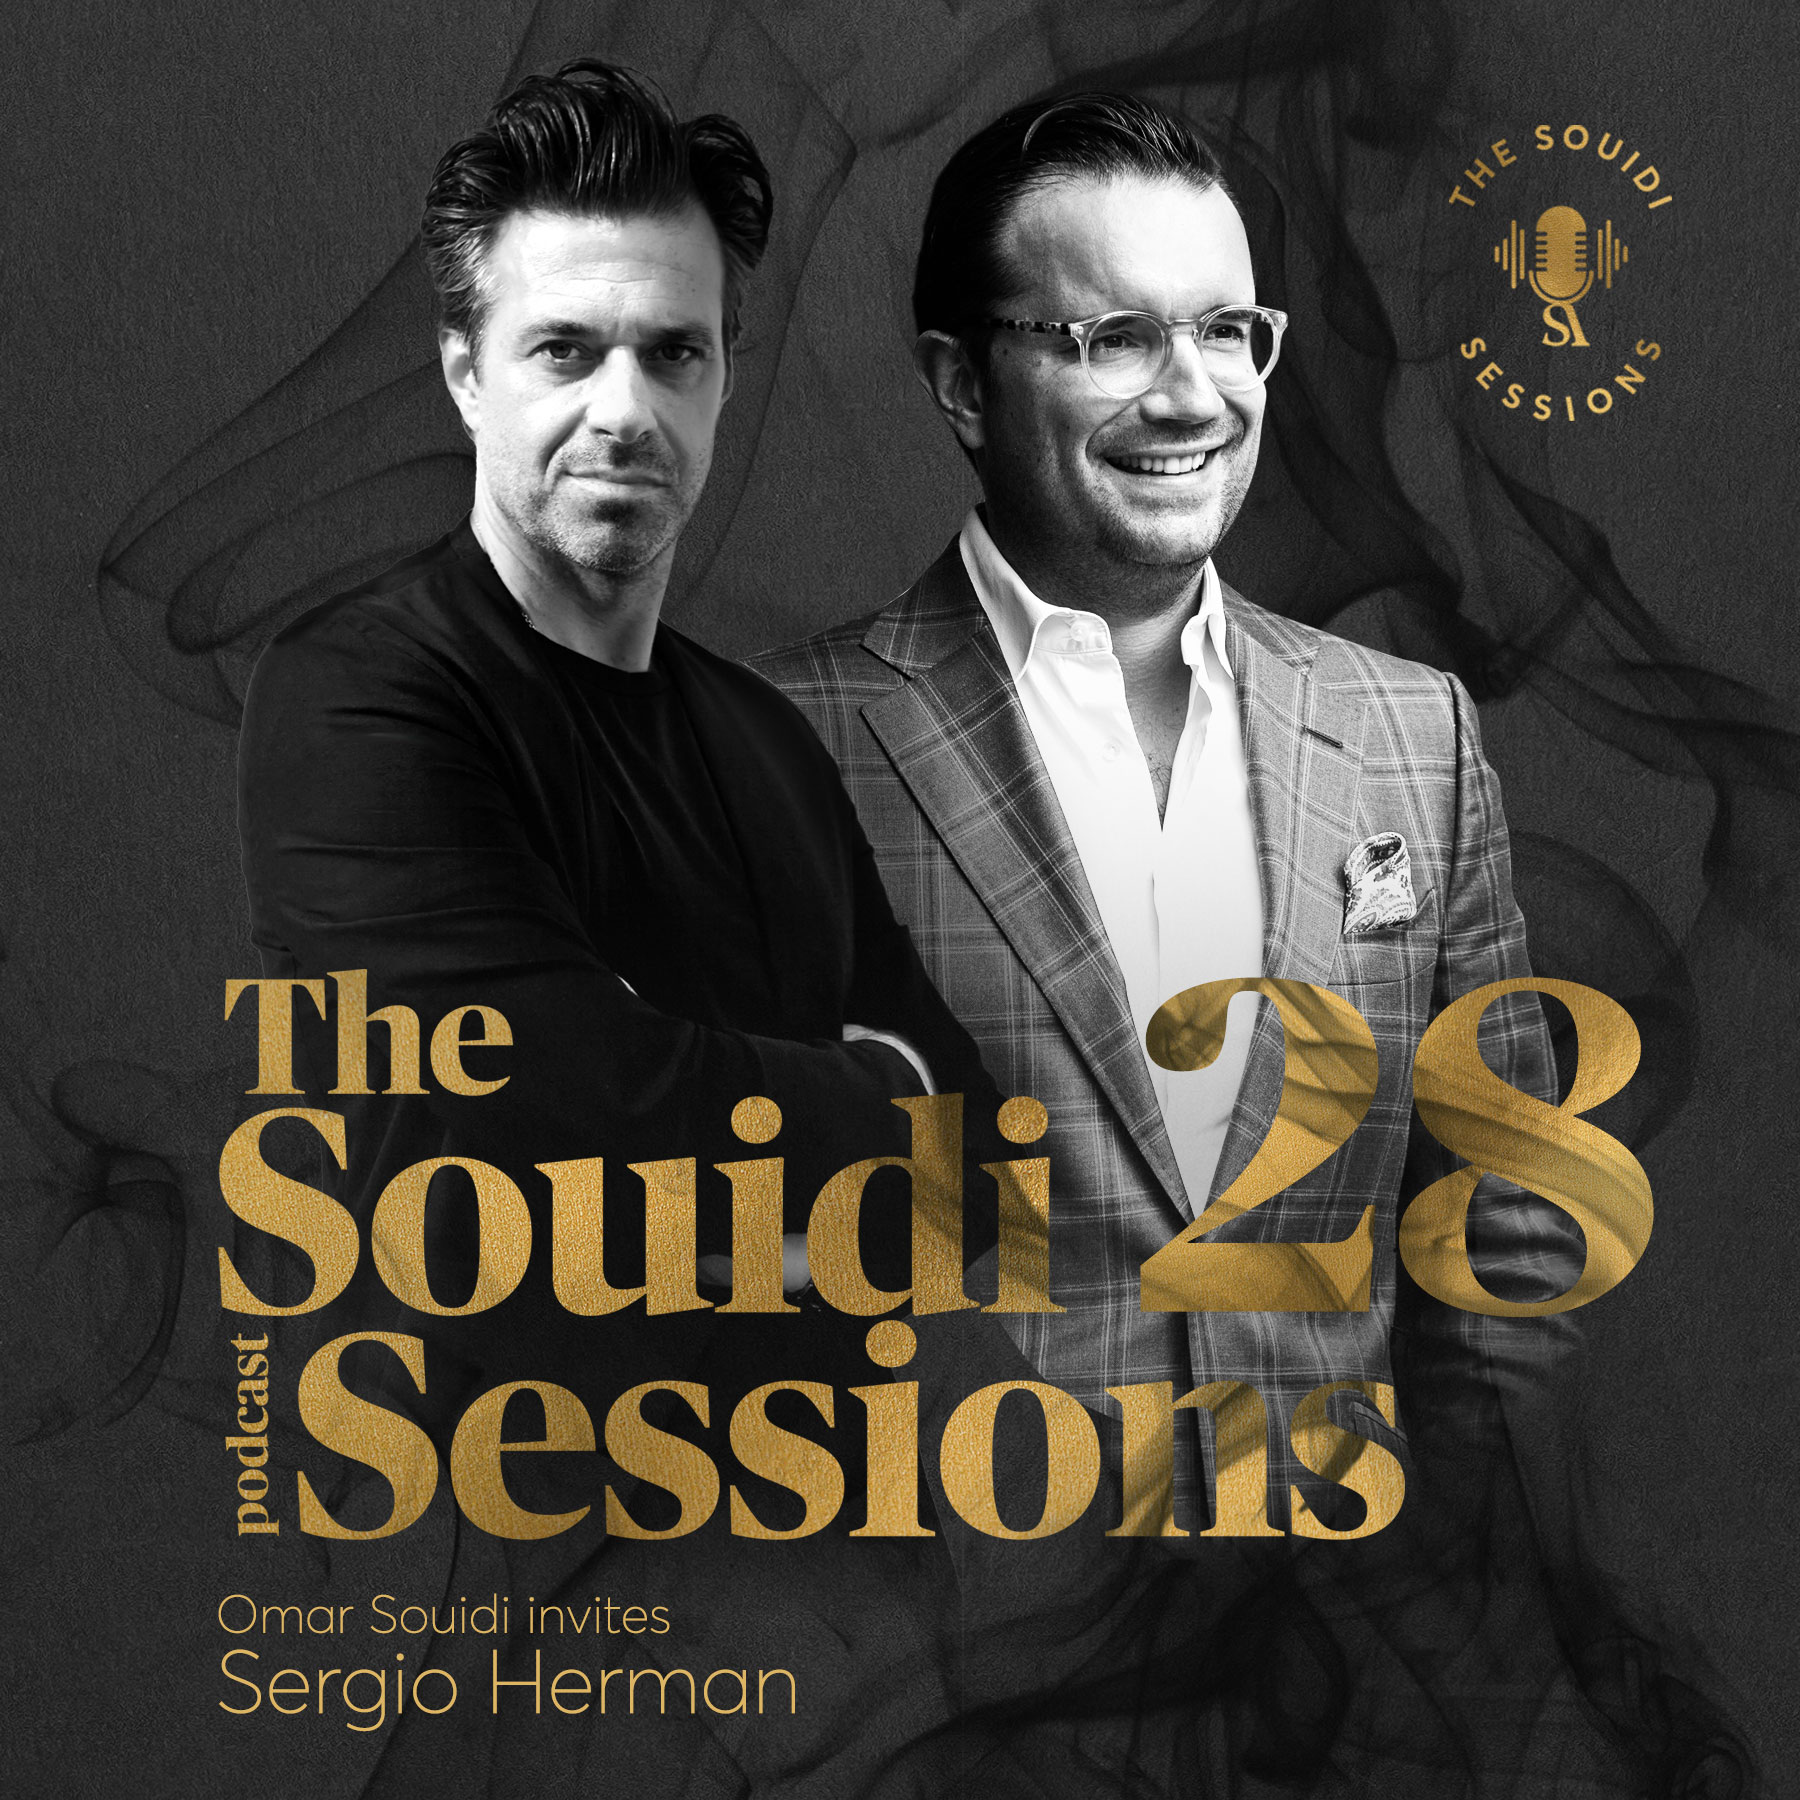 Souidi sessions met Sergio Herman